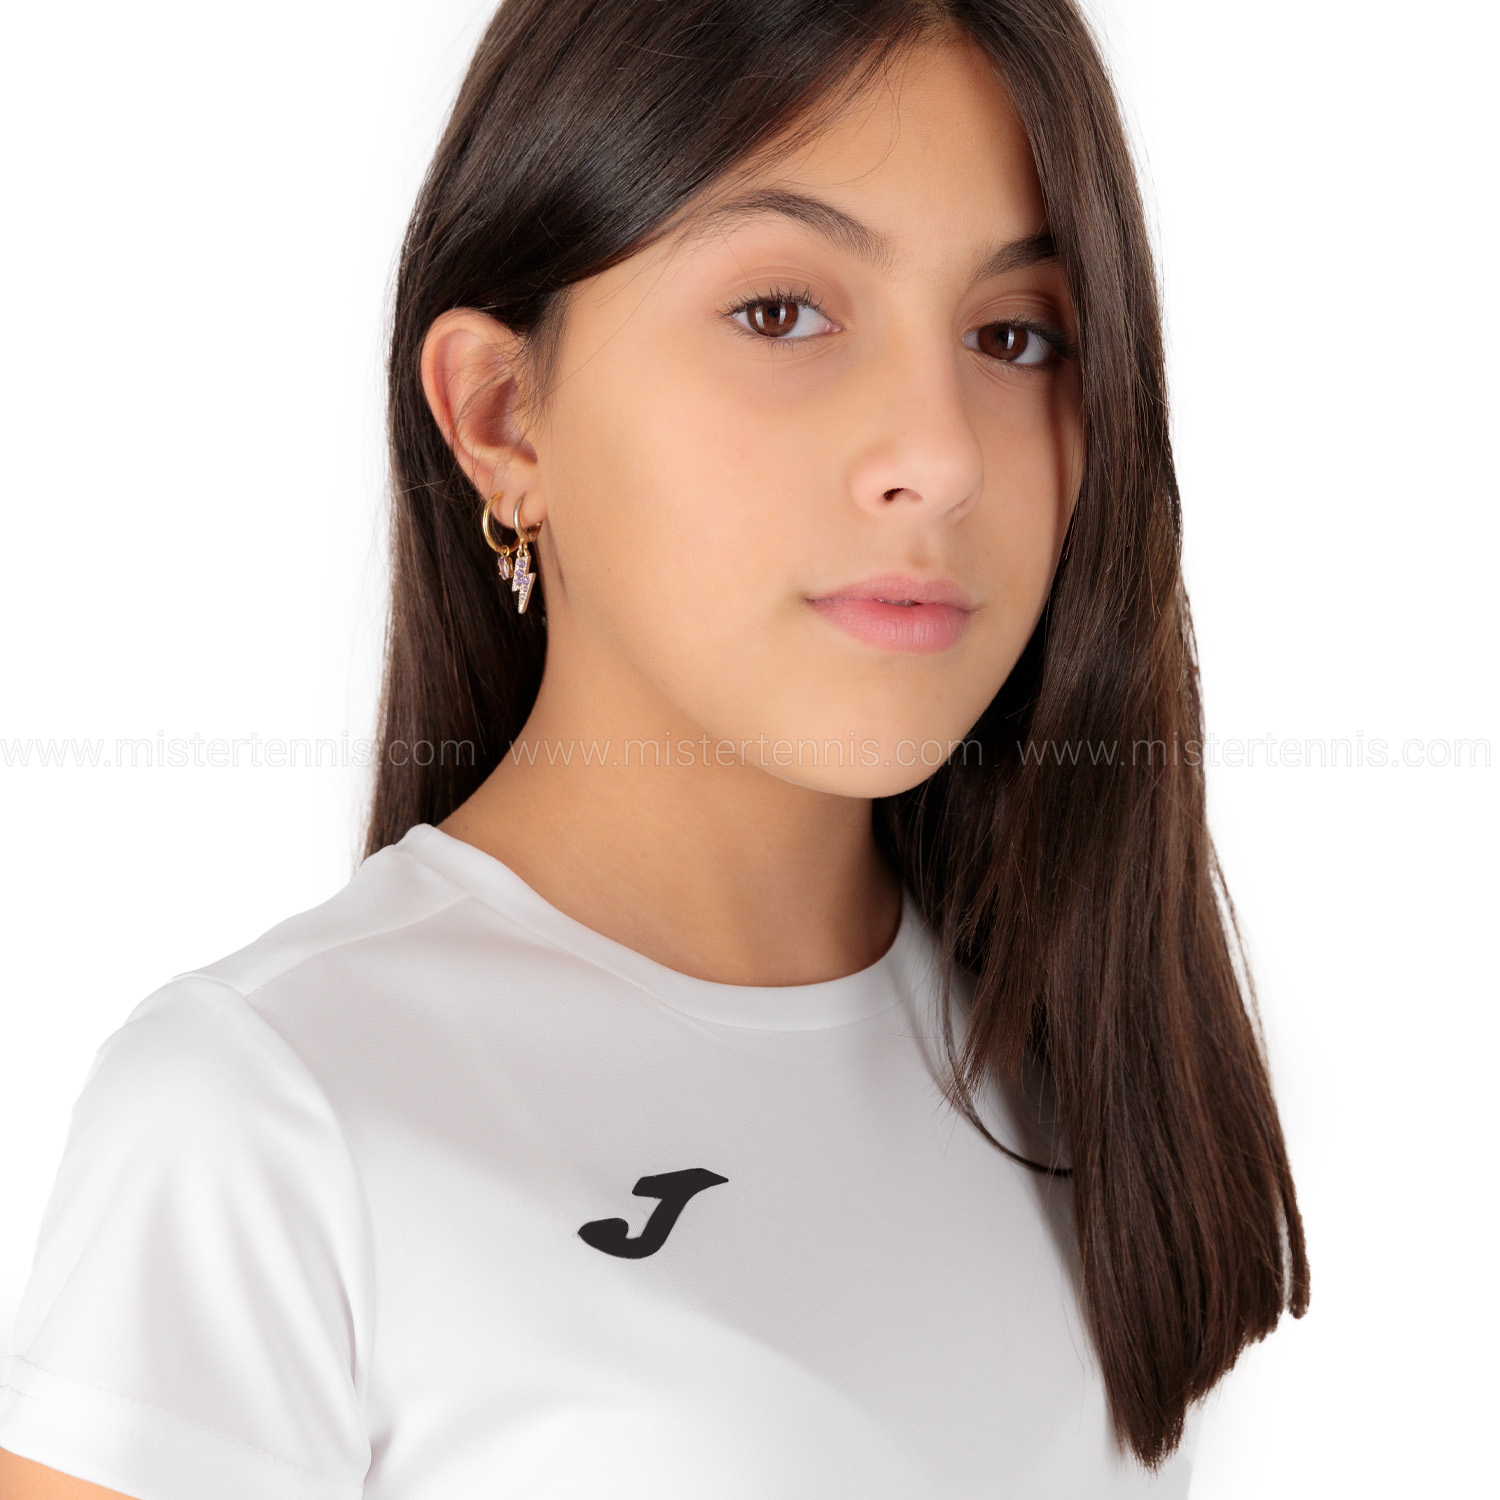 Joma Combi Camiseta Niña - White